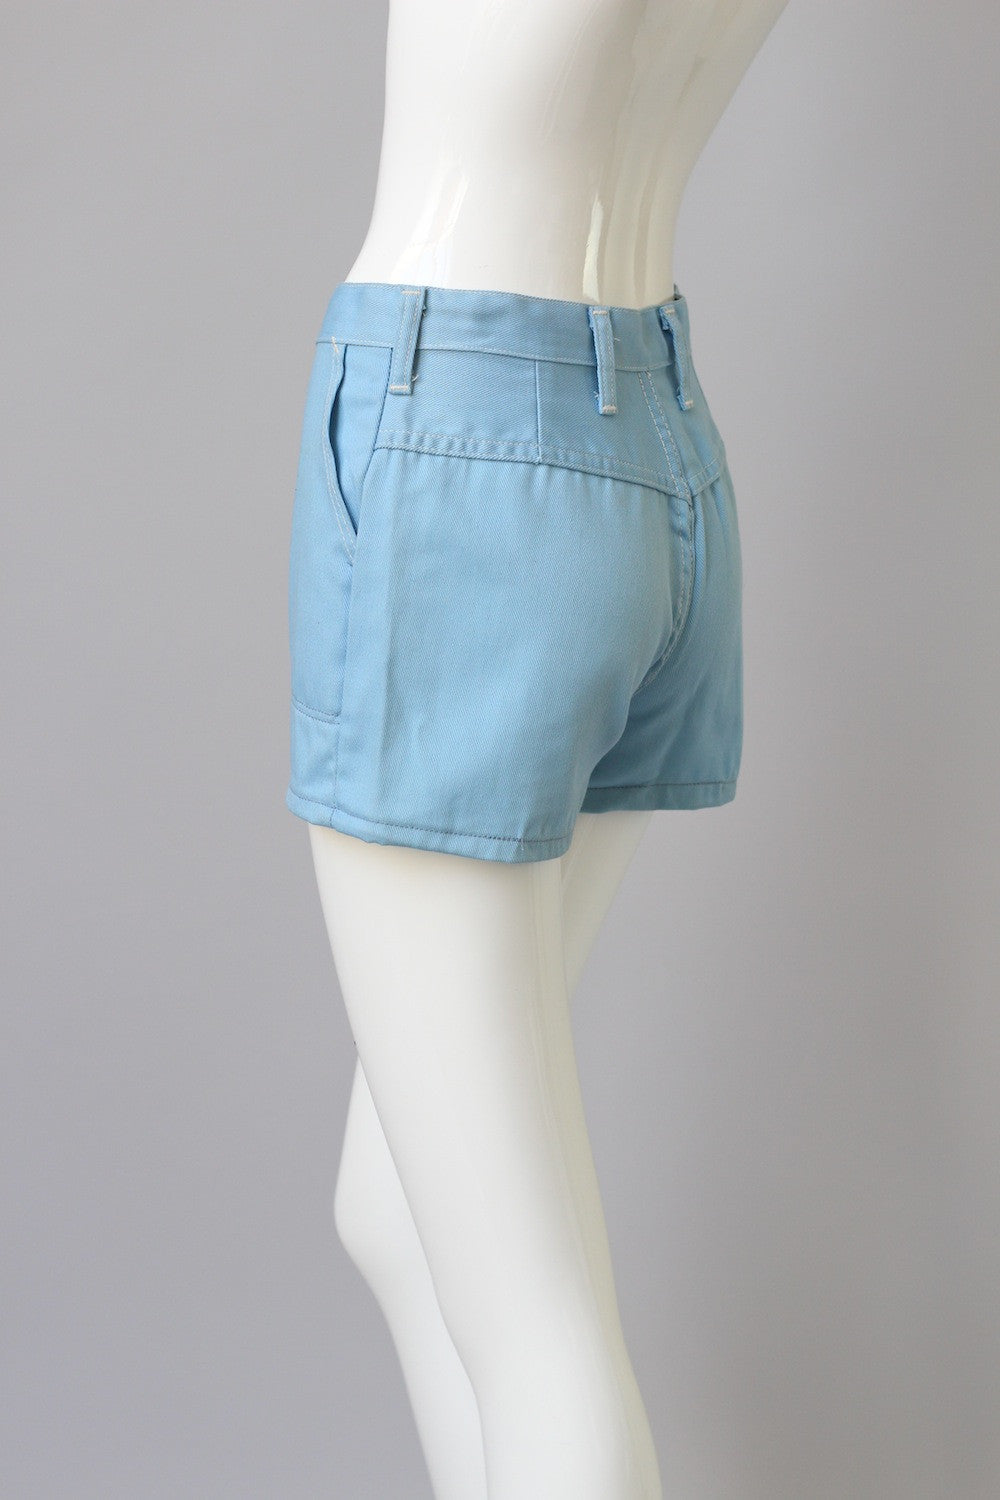 Deadstock Wranglers 1960s Blue High Waisted Denim Shorts